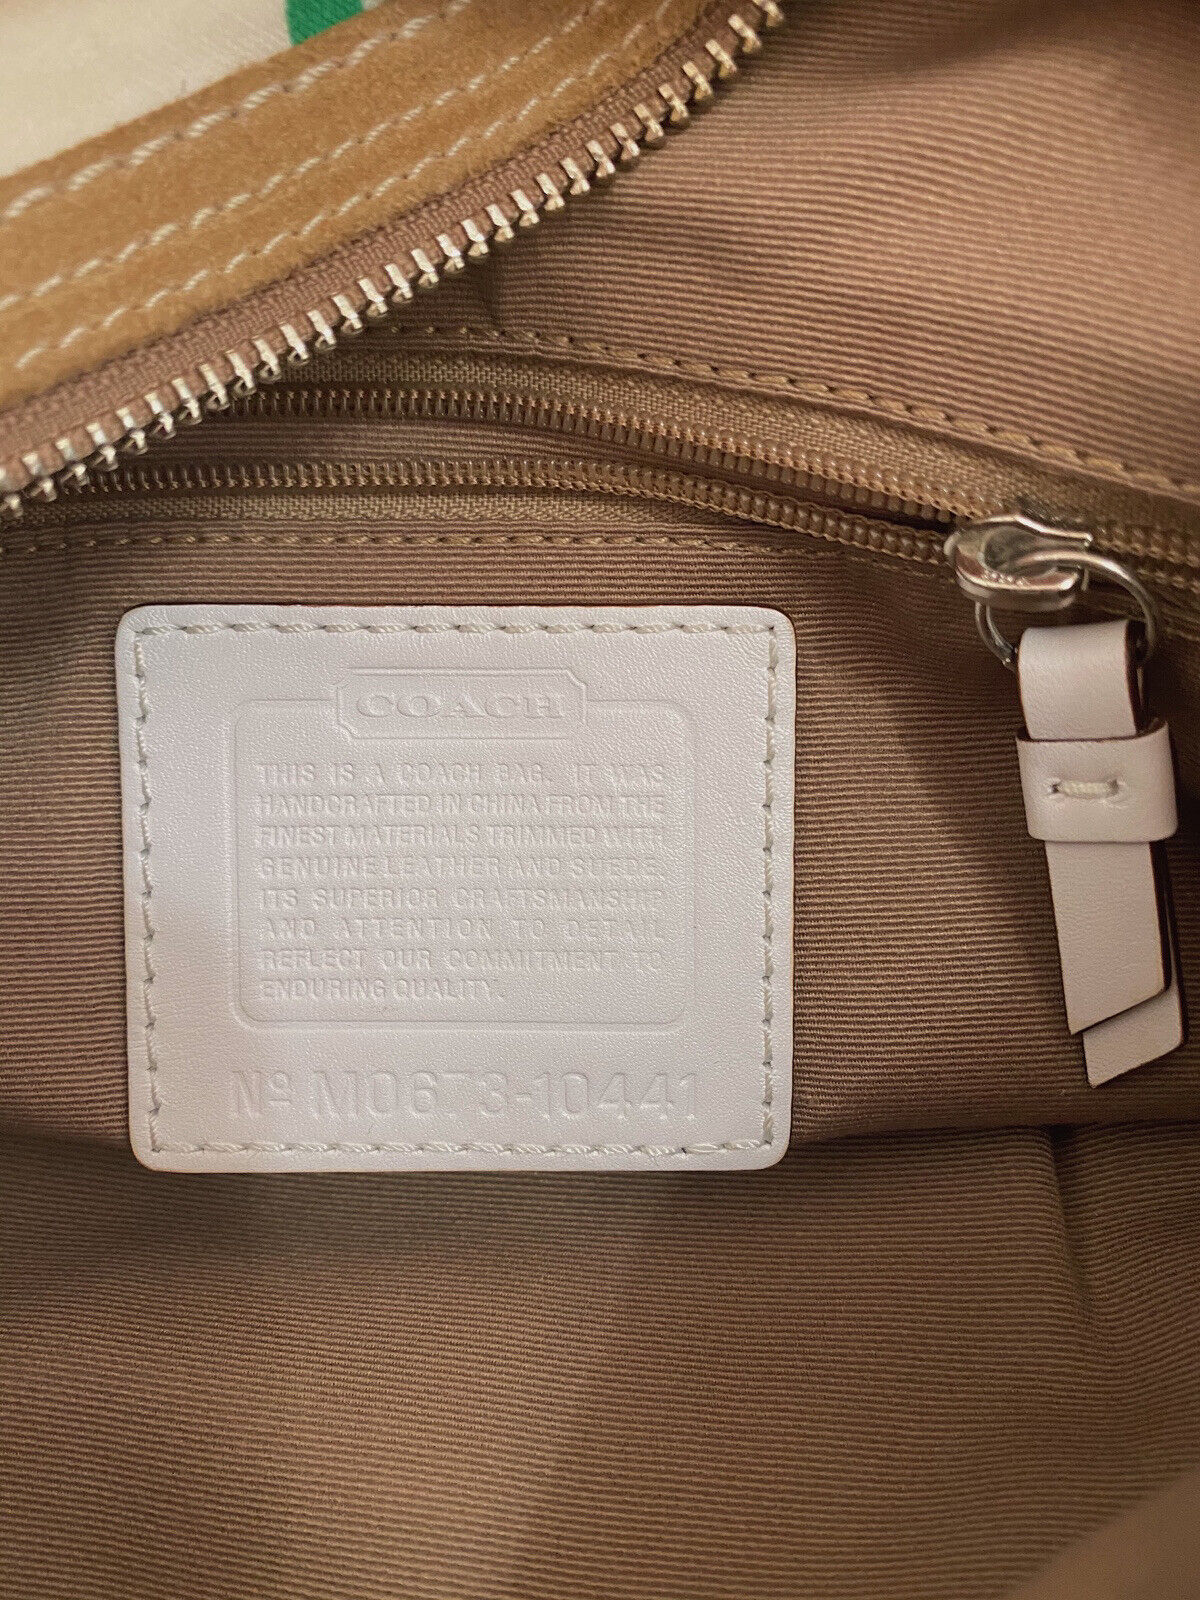 Coach patchwork satchel shoulder bag - image 7